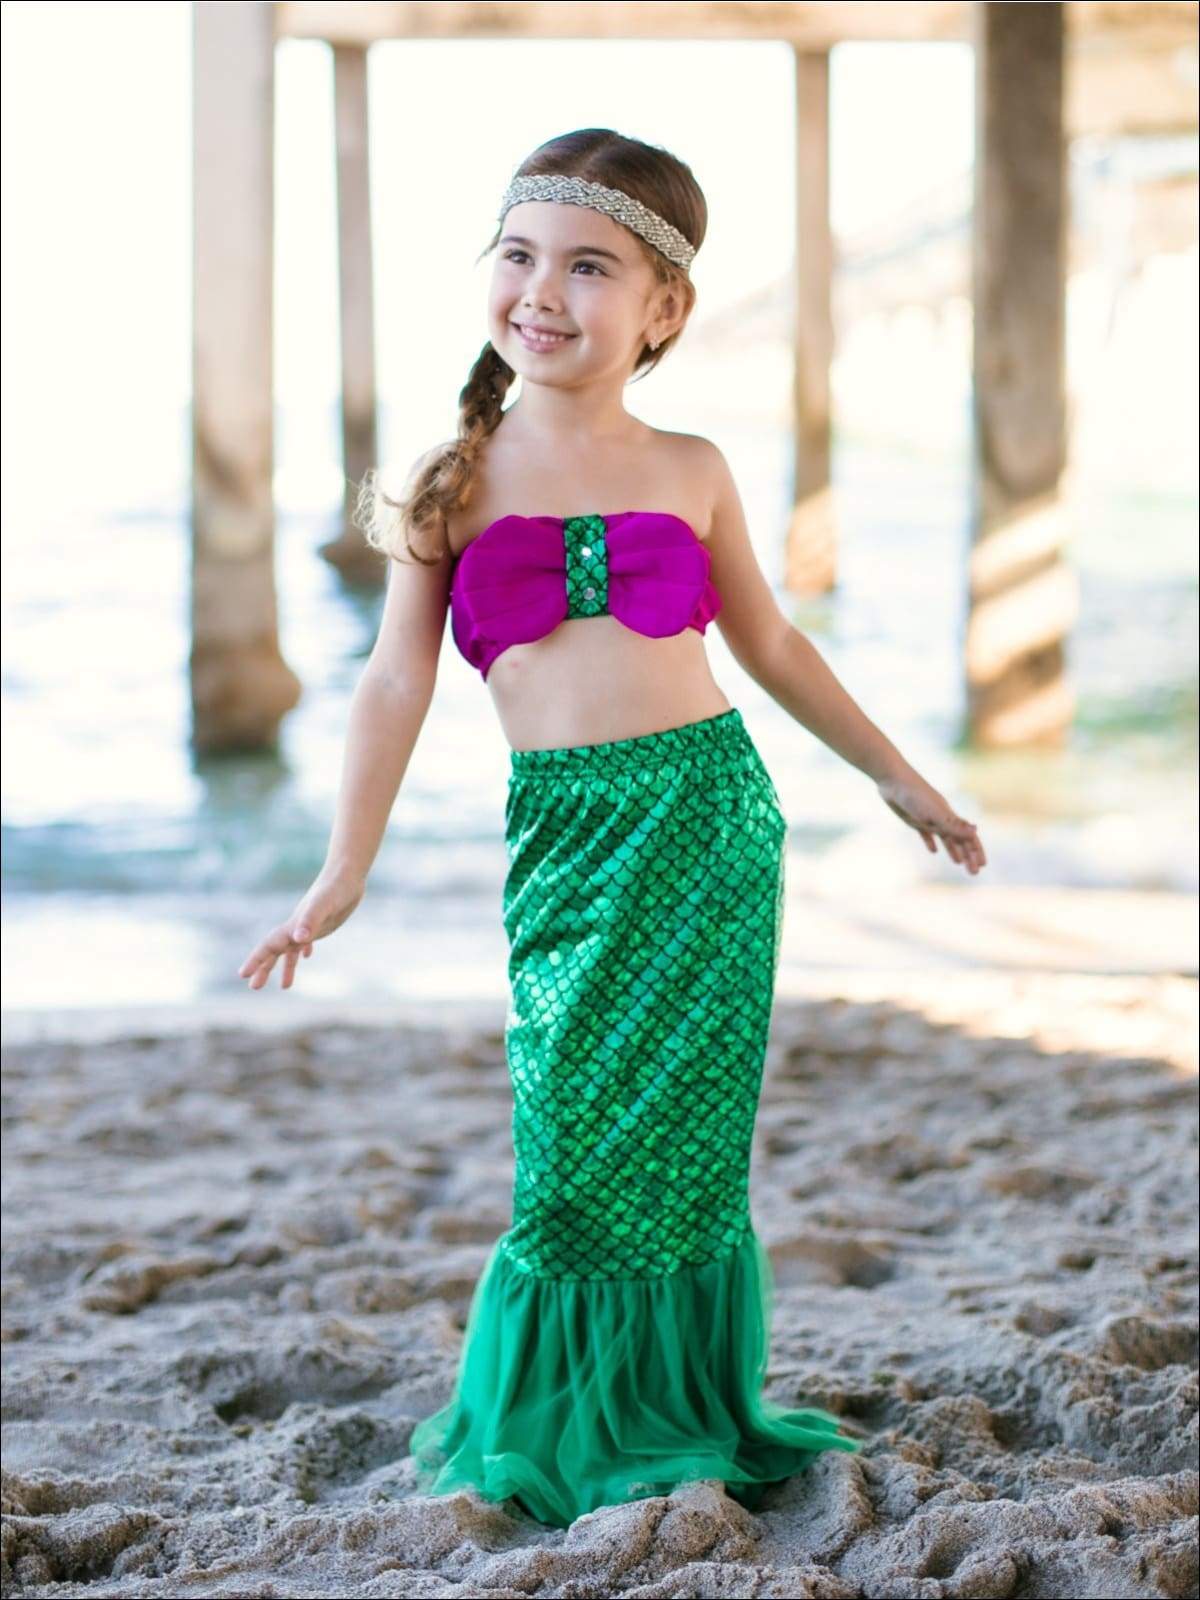 Girls Strapless Ruffled Mermaid Bikini with Tail Skirt Cover Up - Girls Mermaid Swimsuit